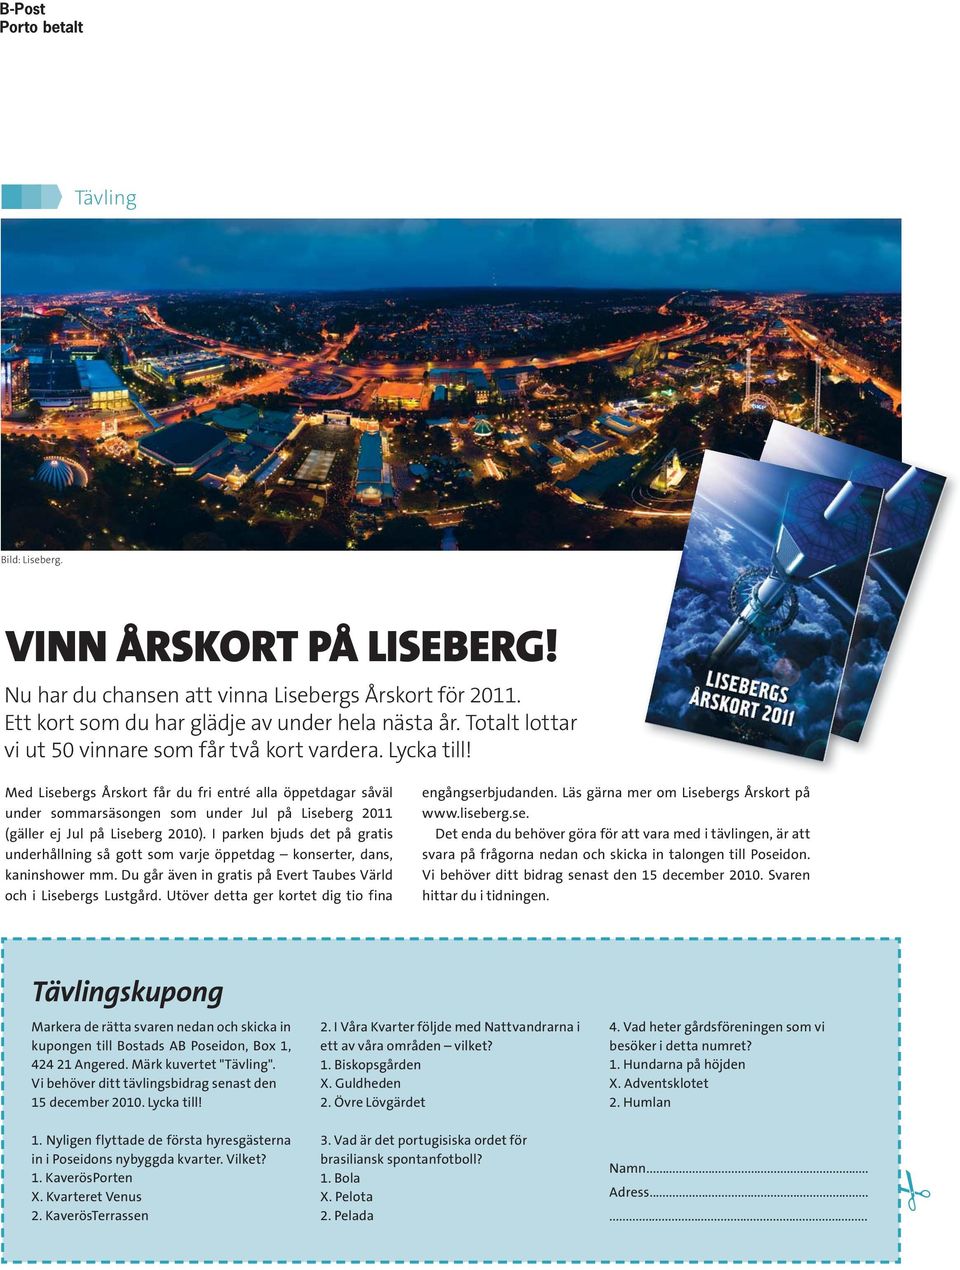 Med Lisebergs Årskort får du fri entré alla öppetdagar såväl under sommarsäsongen som under Jul på Liseberg 2011 (gäller ej Jul på Liseberg 2010).